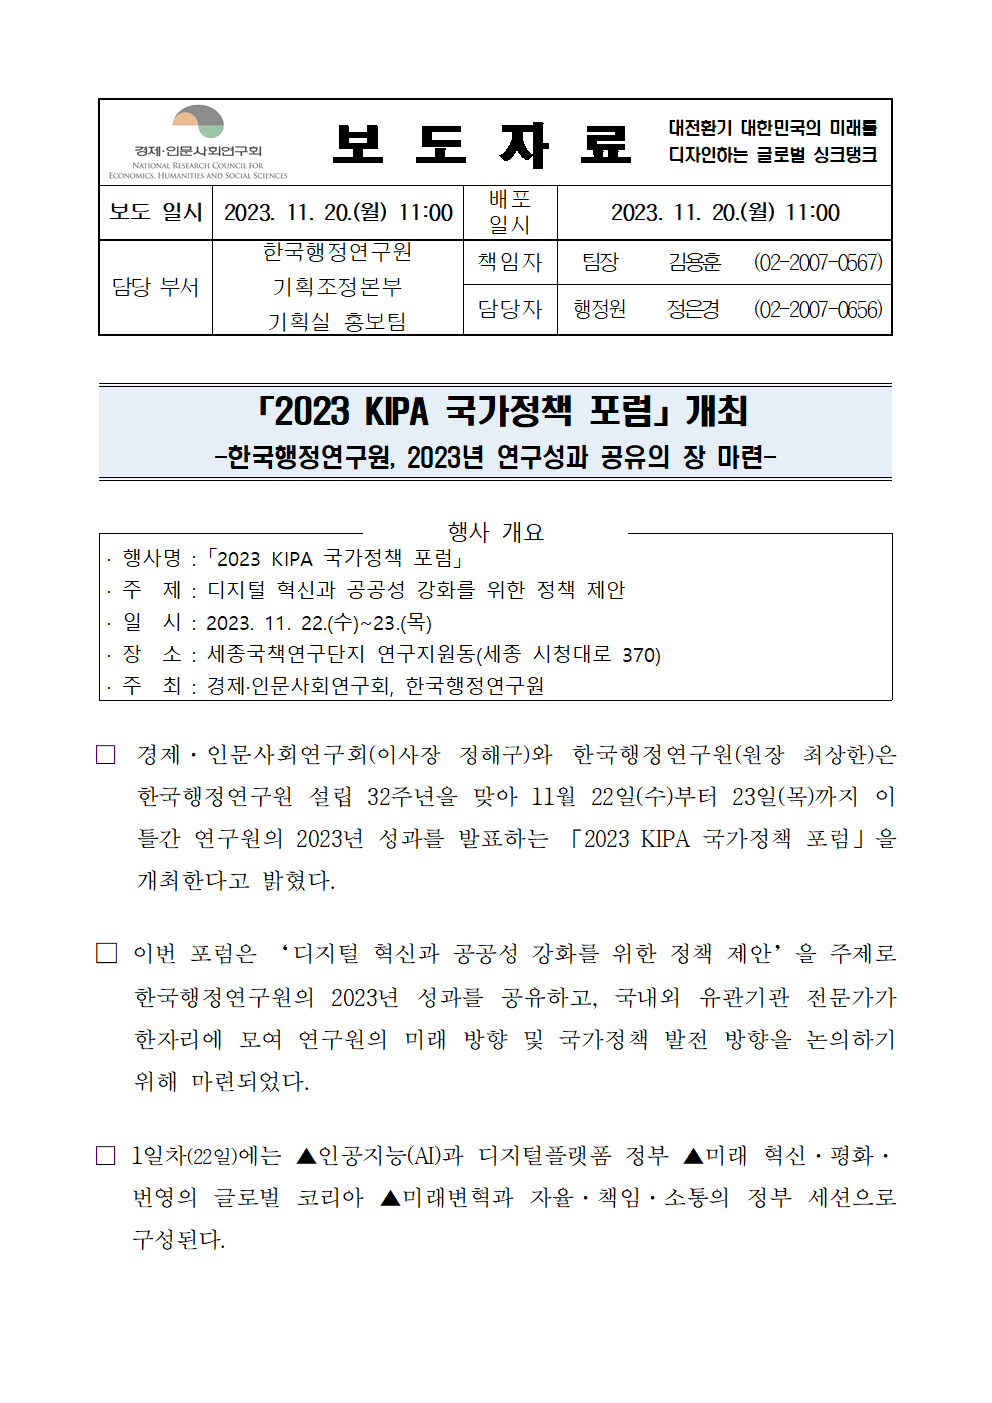 (1/2) 한국행정연구원,「2023 KIPA 국가정책 포럼」개최 상세 하단 참조